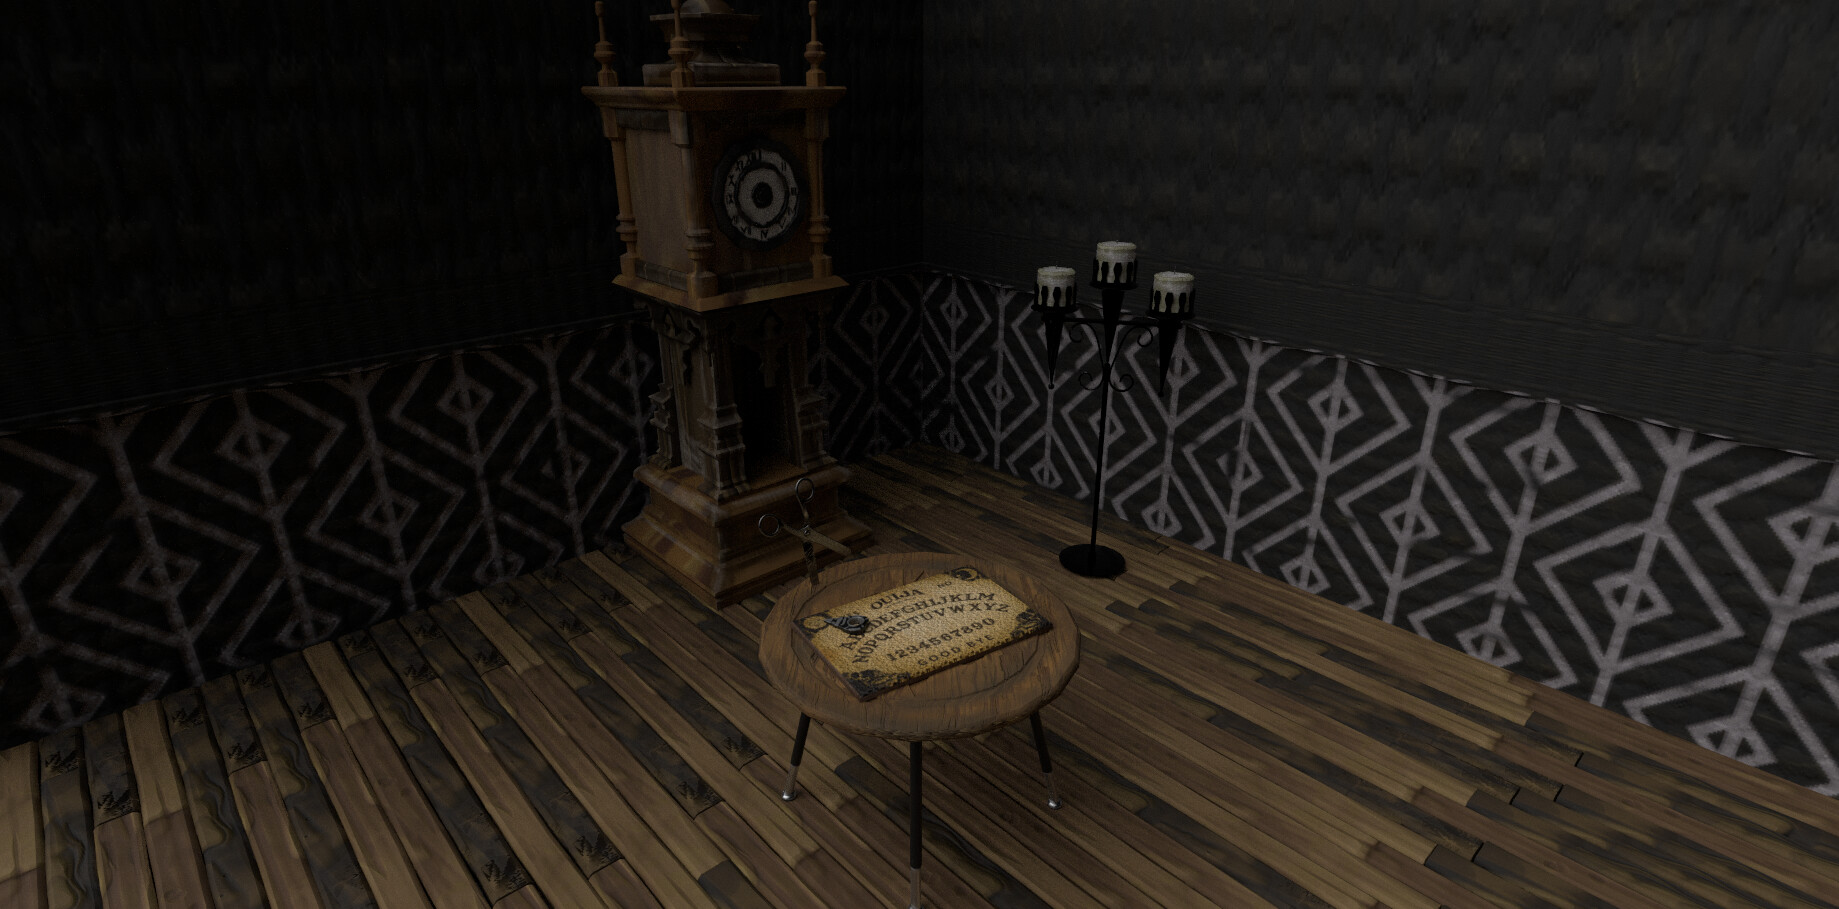 ArtStation - Ouija Board